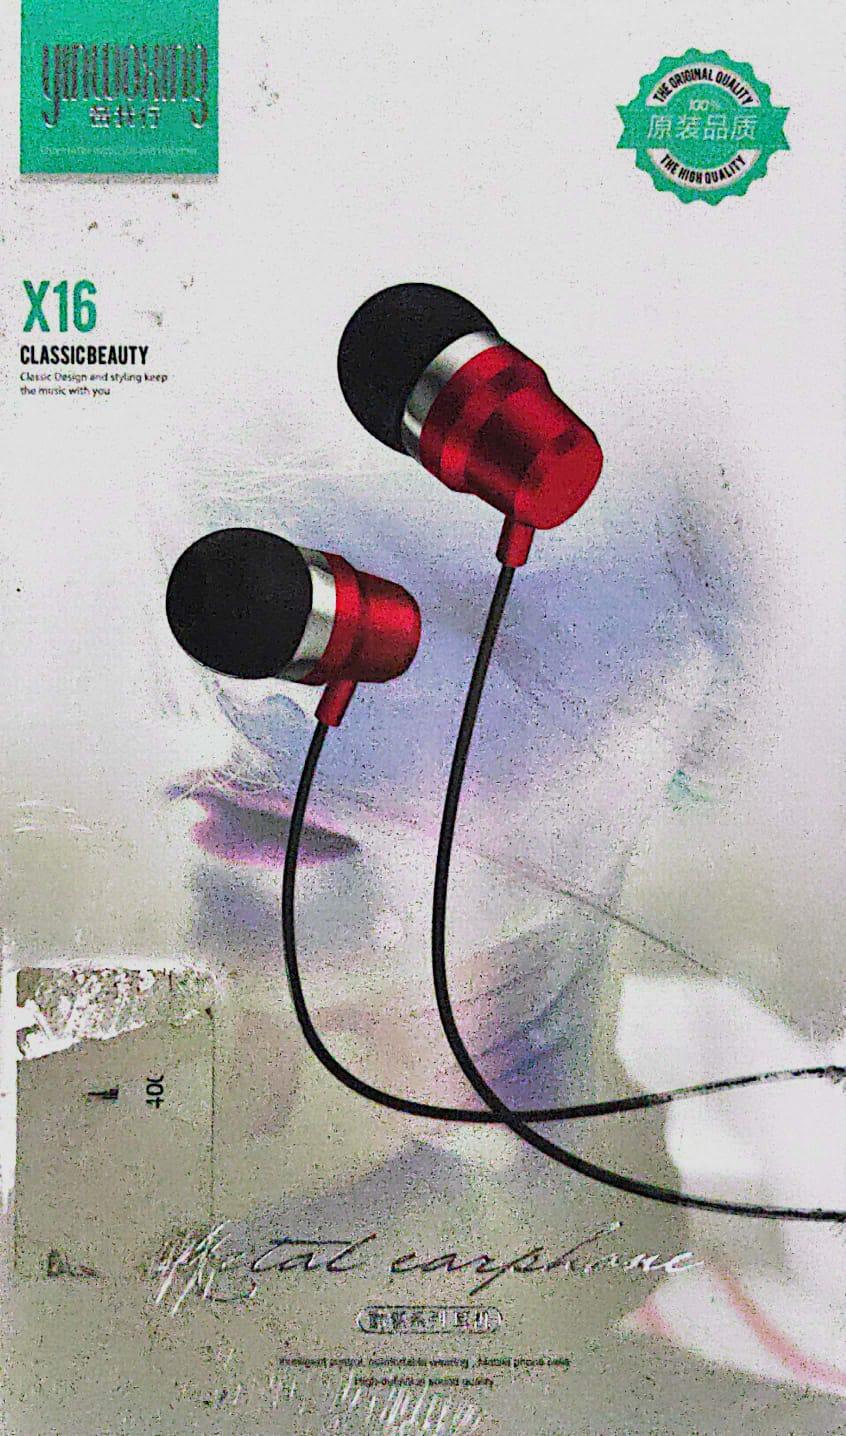 Yinwoxing X16 Wired Earphone